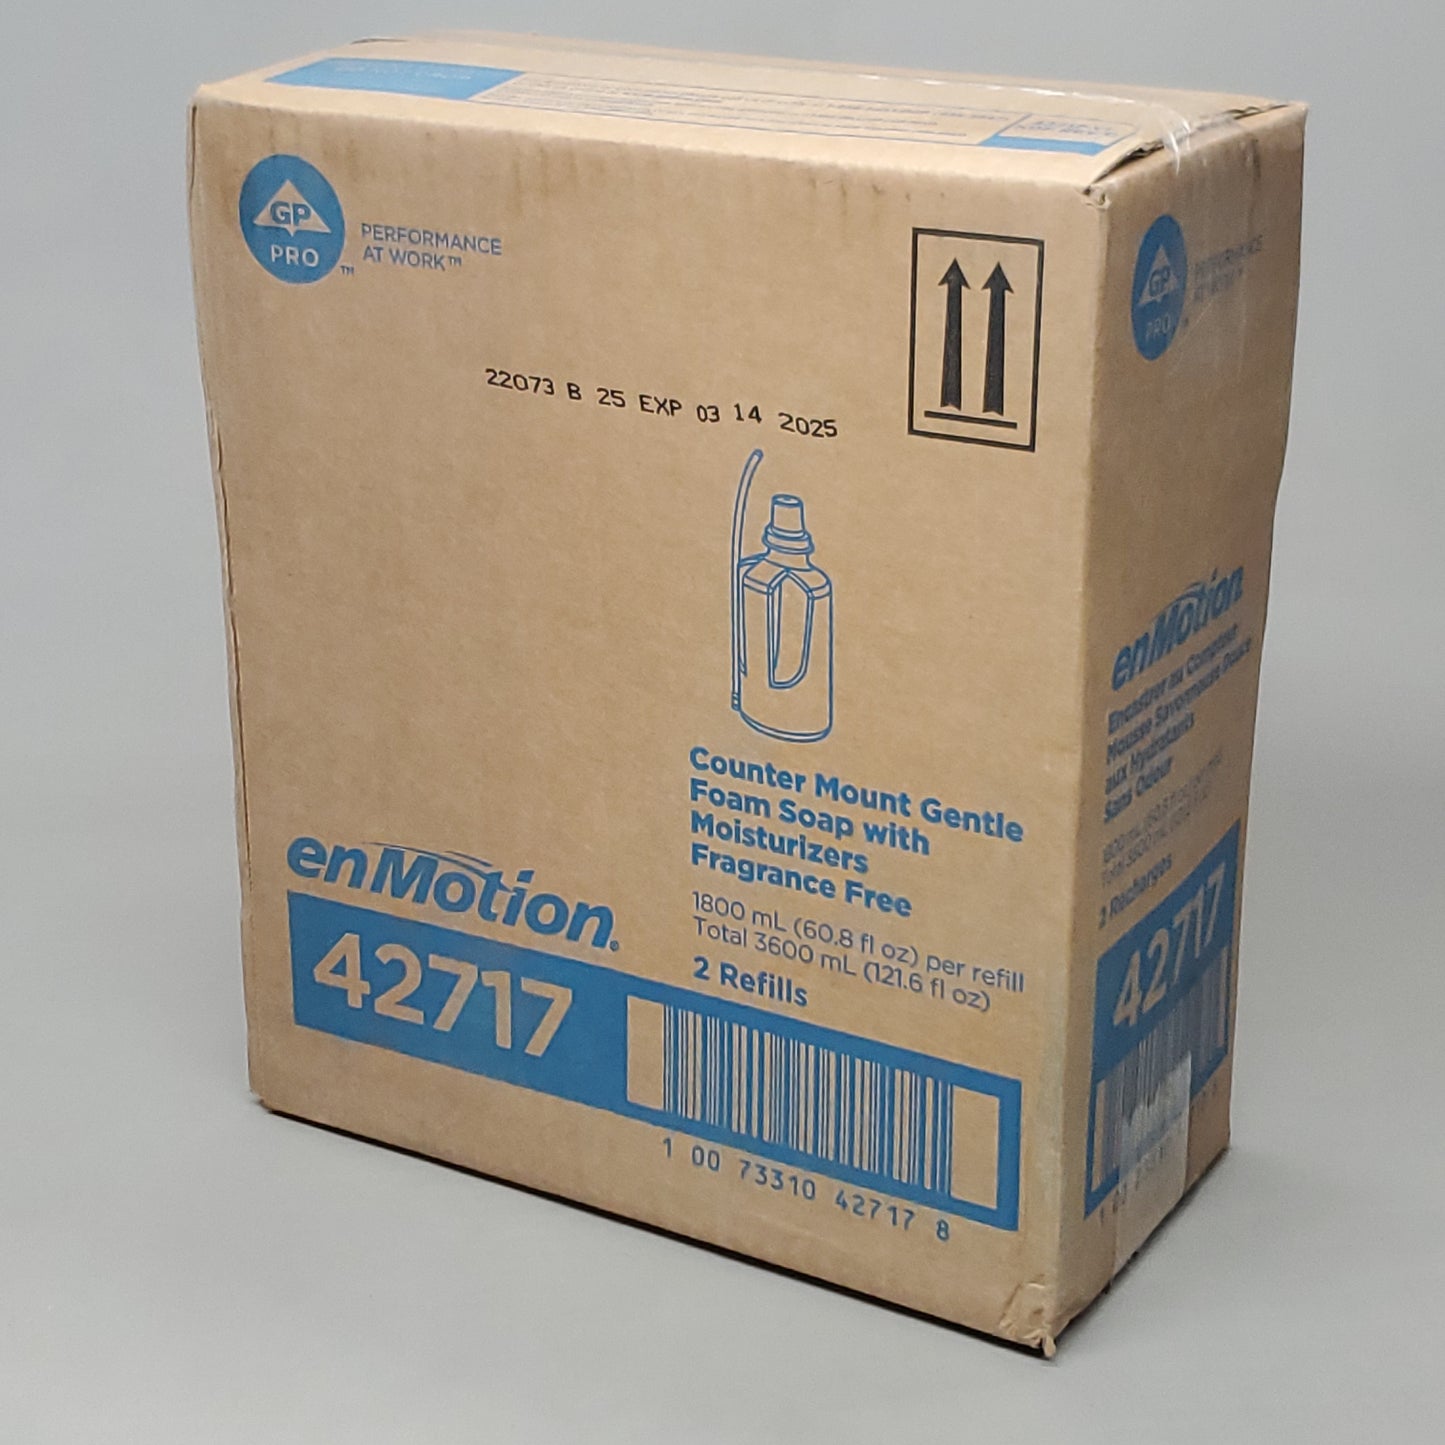 GEORGIA PACIFIC enMotion Counter Mount Gentle Foam Soap w/ Moisturizer 3600 mL 42717 (03/25)